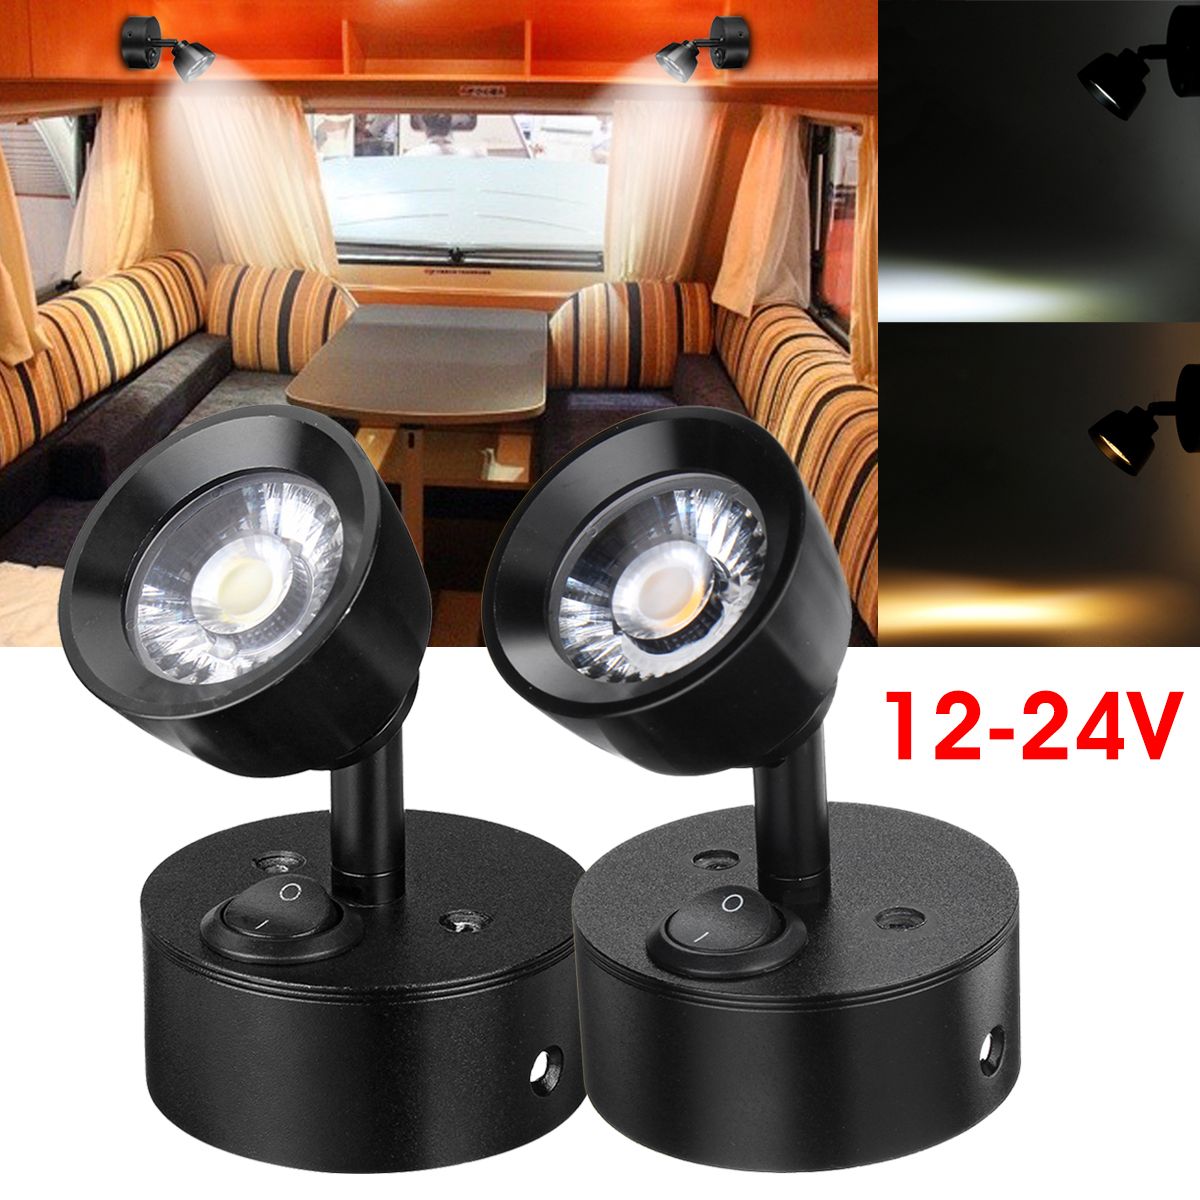 LED-Spot-Beam-Lights-Reading-Lamp-3000K-6000K-12-24V-1W-for-Bedside-Caravan-Boat-RV-Truck-1421399